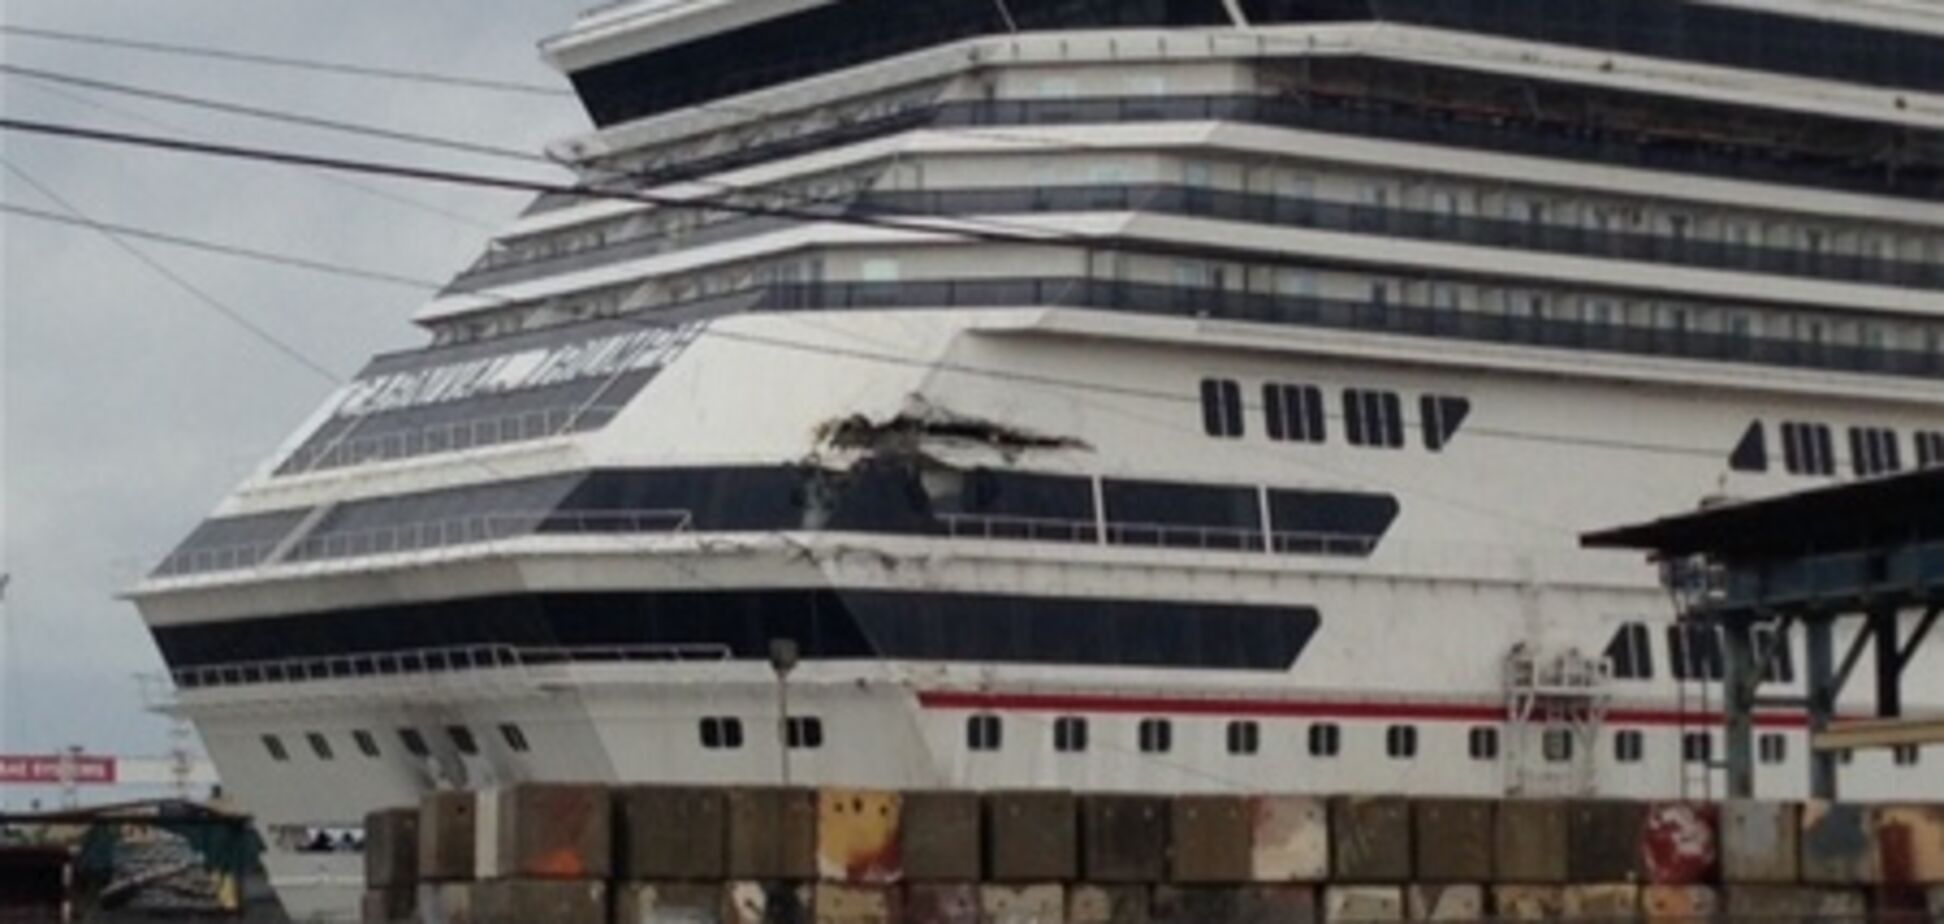 У Мексиканській затоці круїзний лайнер віднесло вітром у відкрите море. Відео